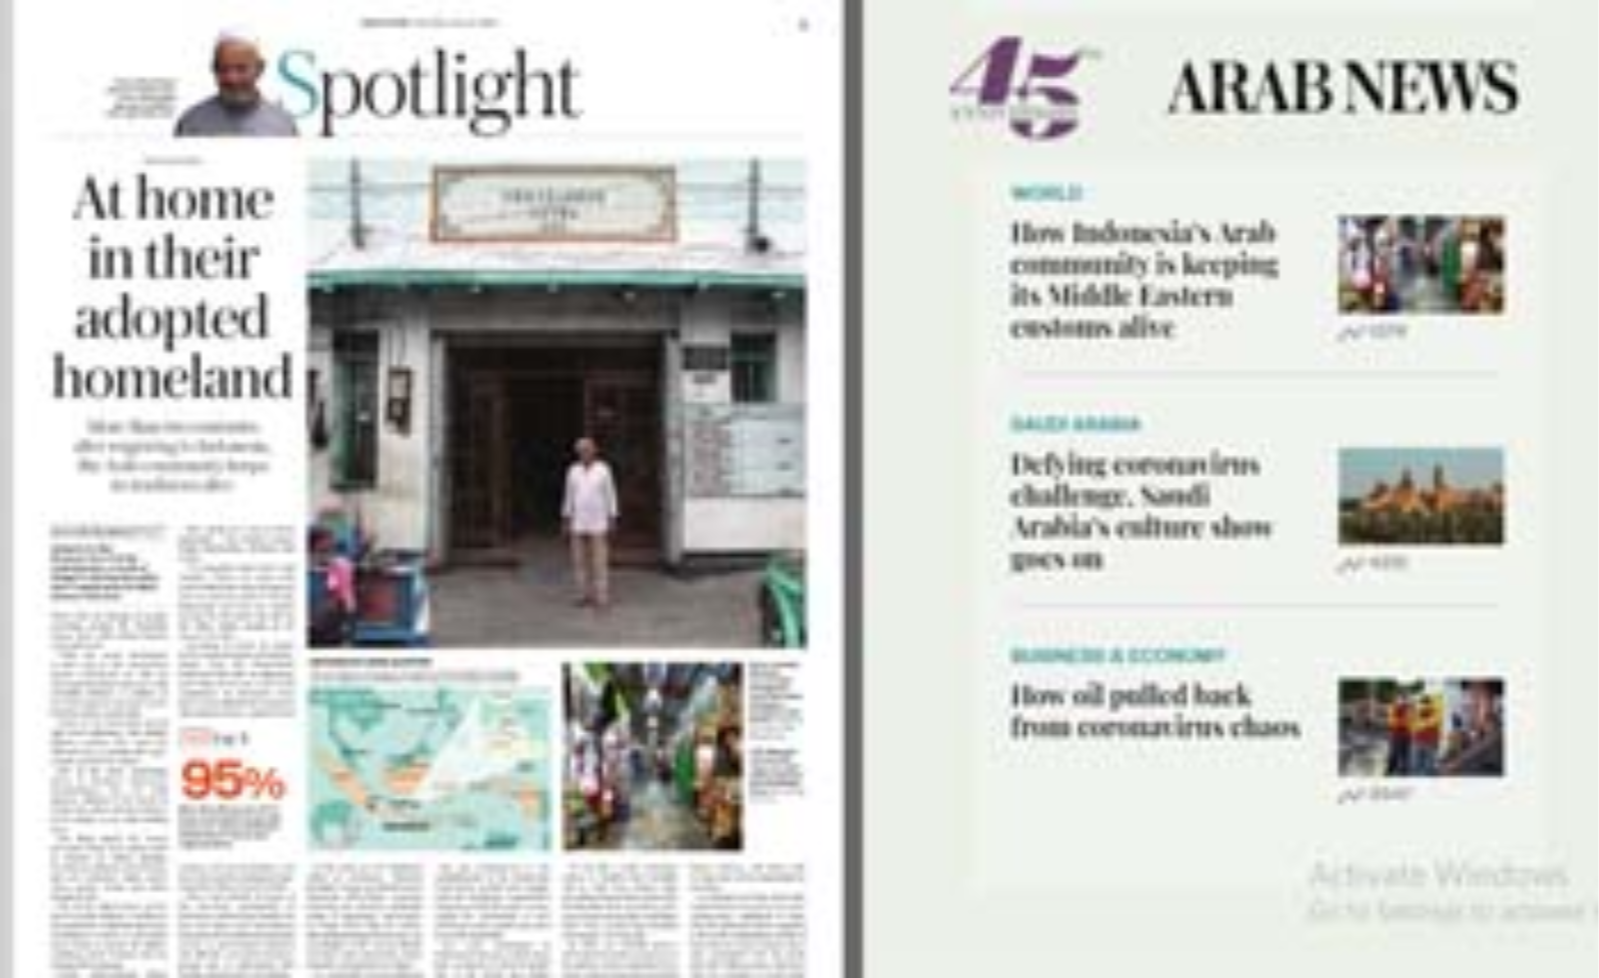 Foto Hotel Kemadjoean tampil di halaman koran Arab News edisi hari ini. (Foto:Arabnews)